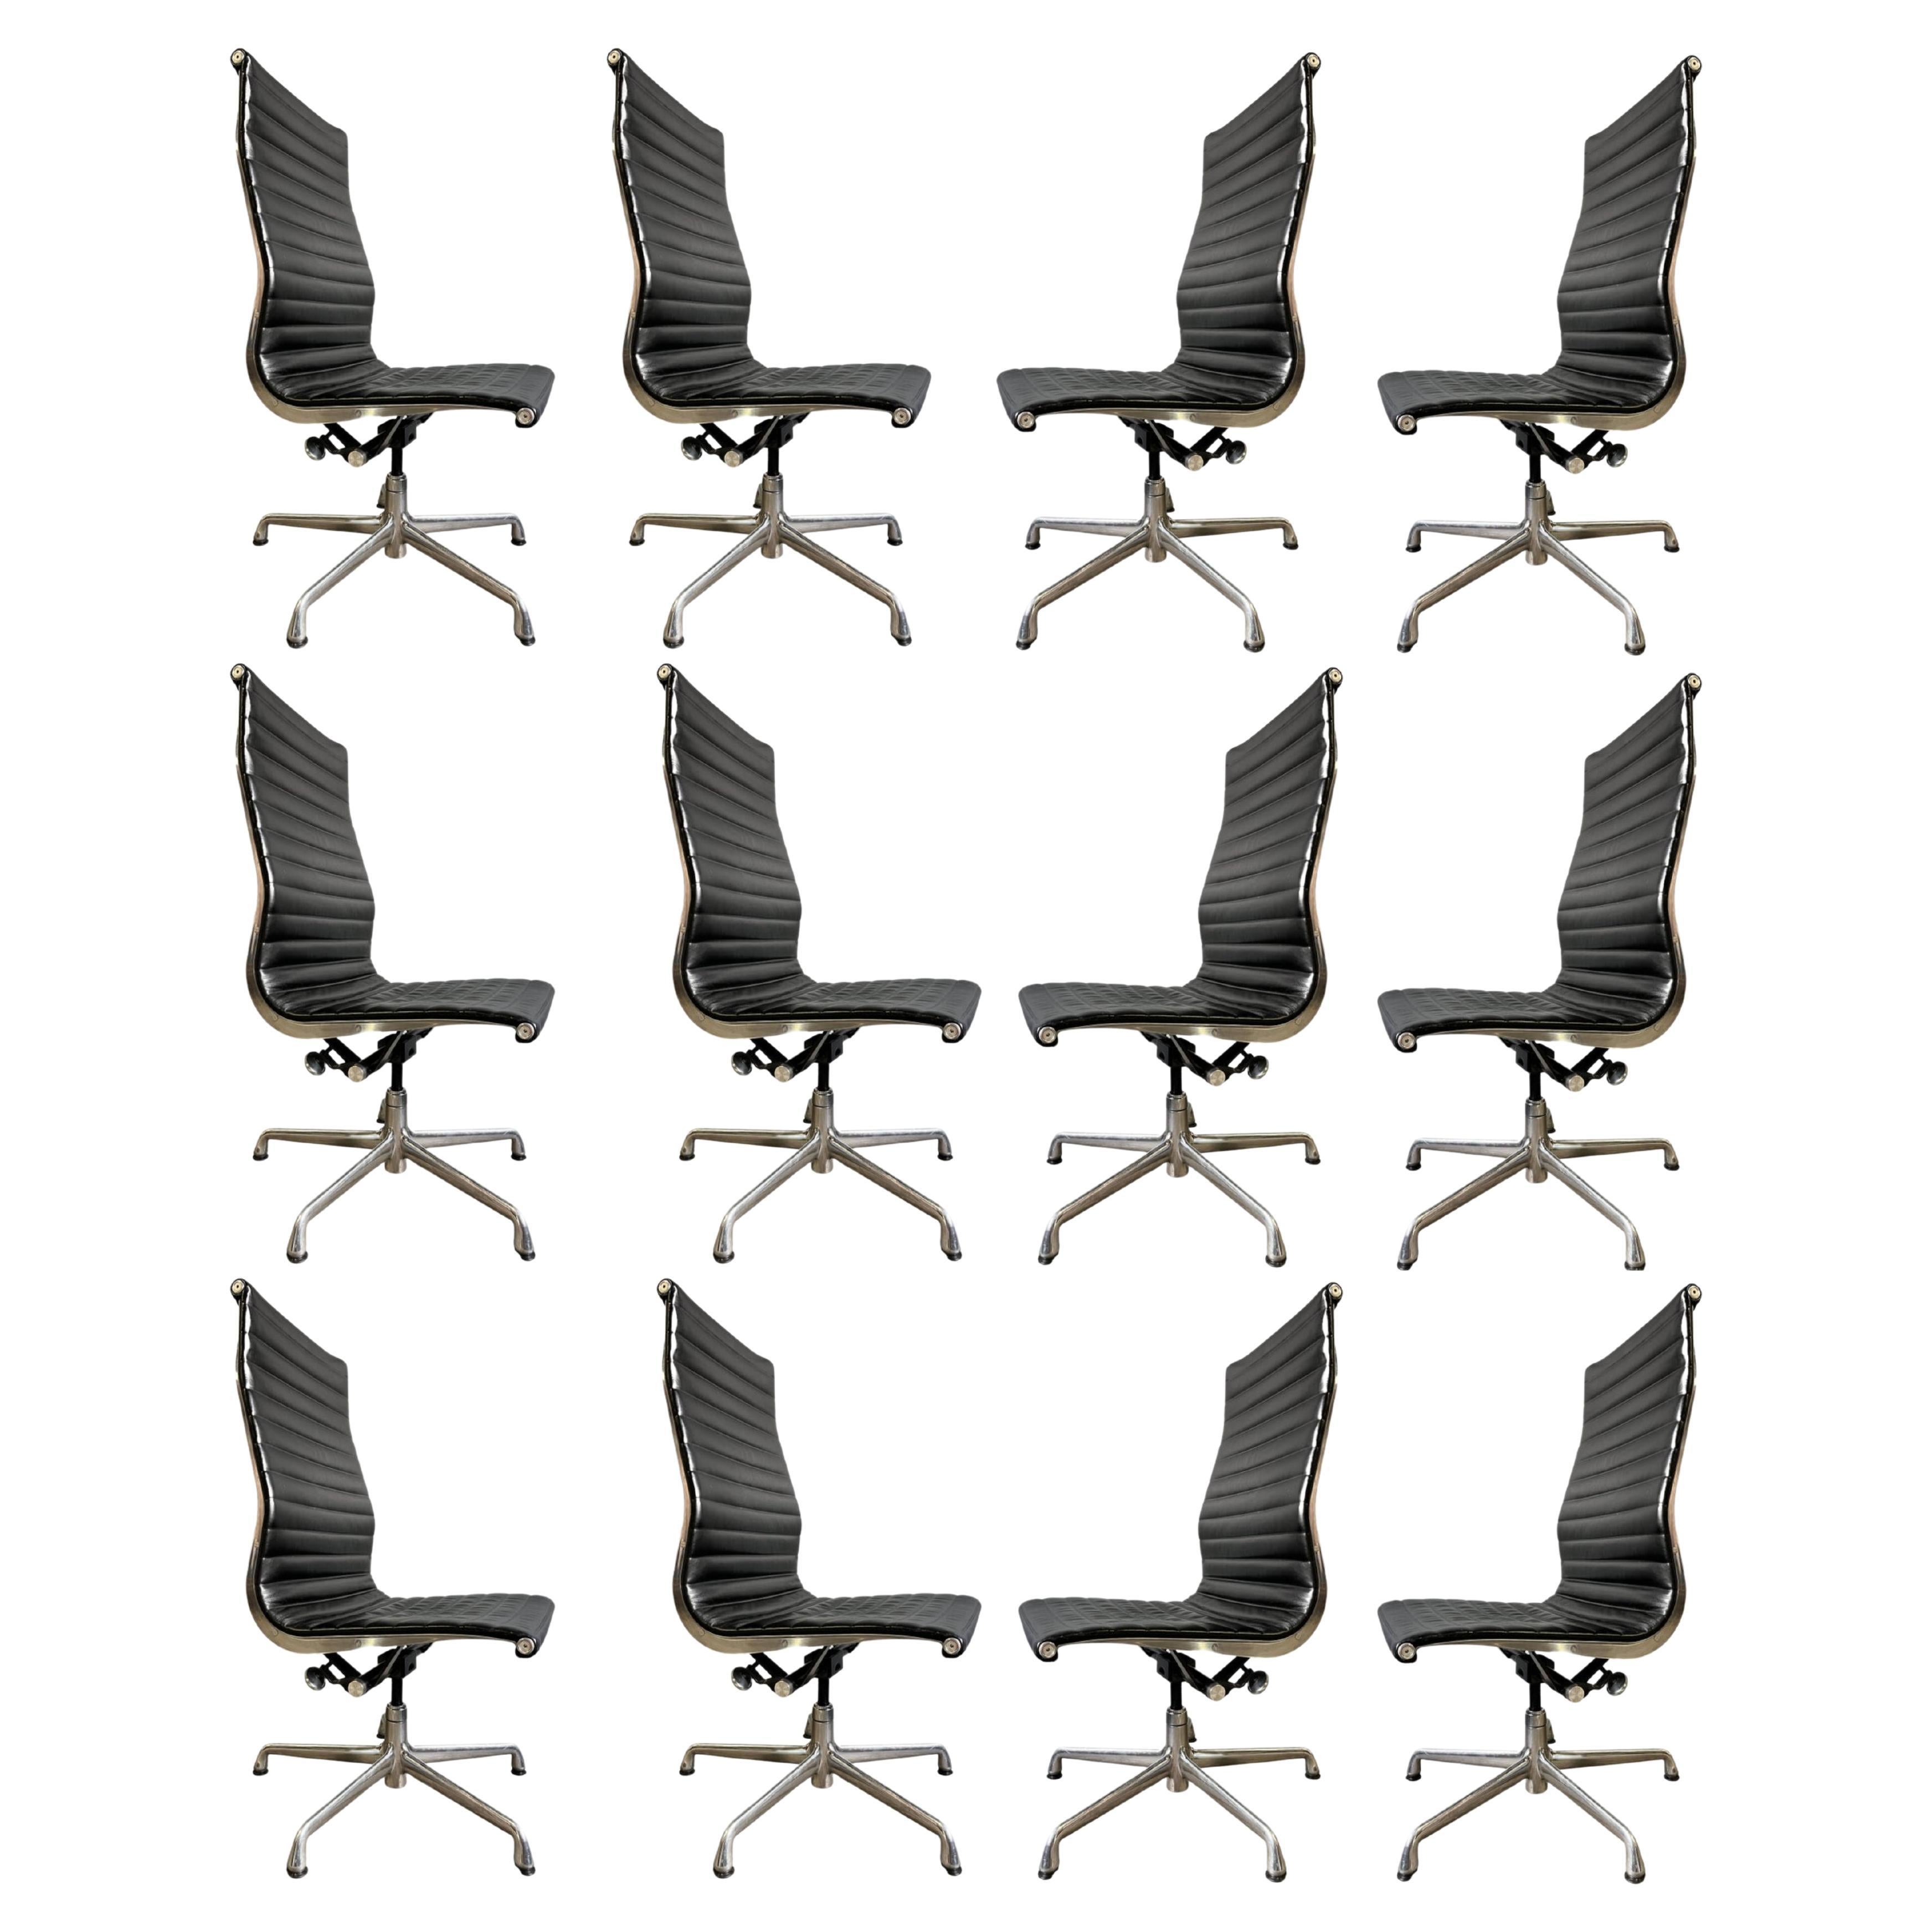 Einzeln verkauft. 30 verfügbar !

Eames for Herman Miller Aluminum Group Stühle aus hochwertigem schwarzem Plüschleder mit hoher Rückenlehne. Wir haben viele Sets, die als Esszimmerstühle mit Fußgleitern und ohne Armlehnen verwendet wurden. Auch mit